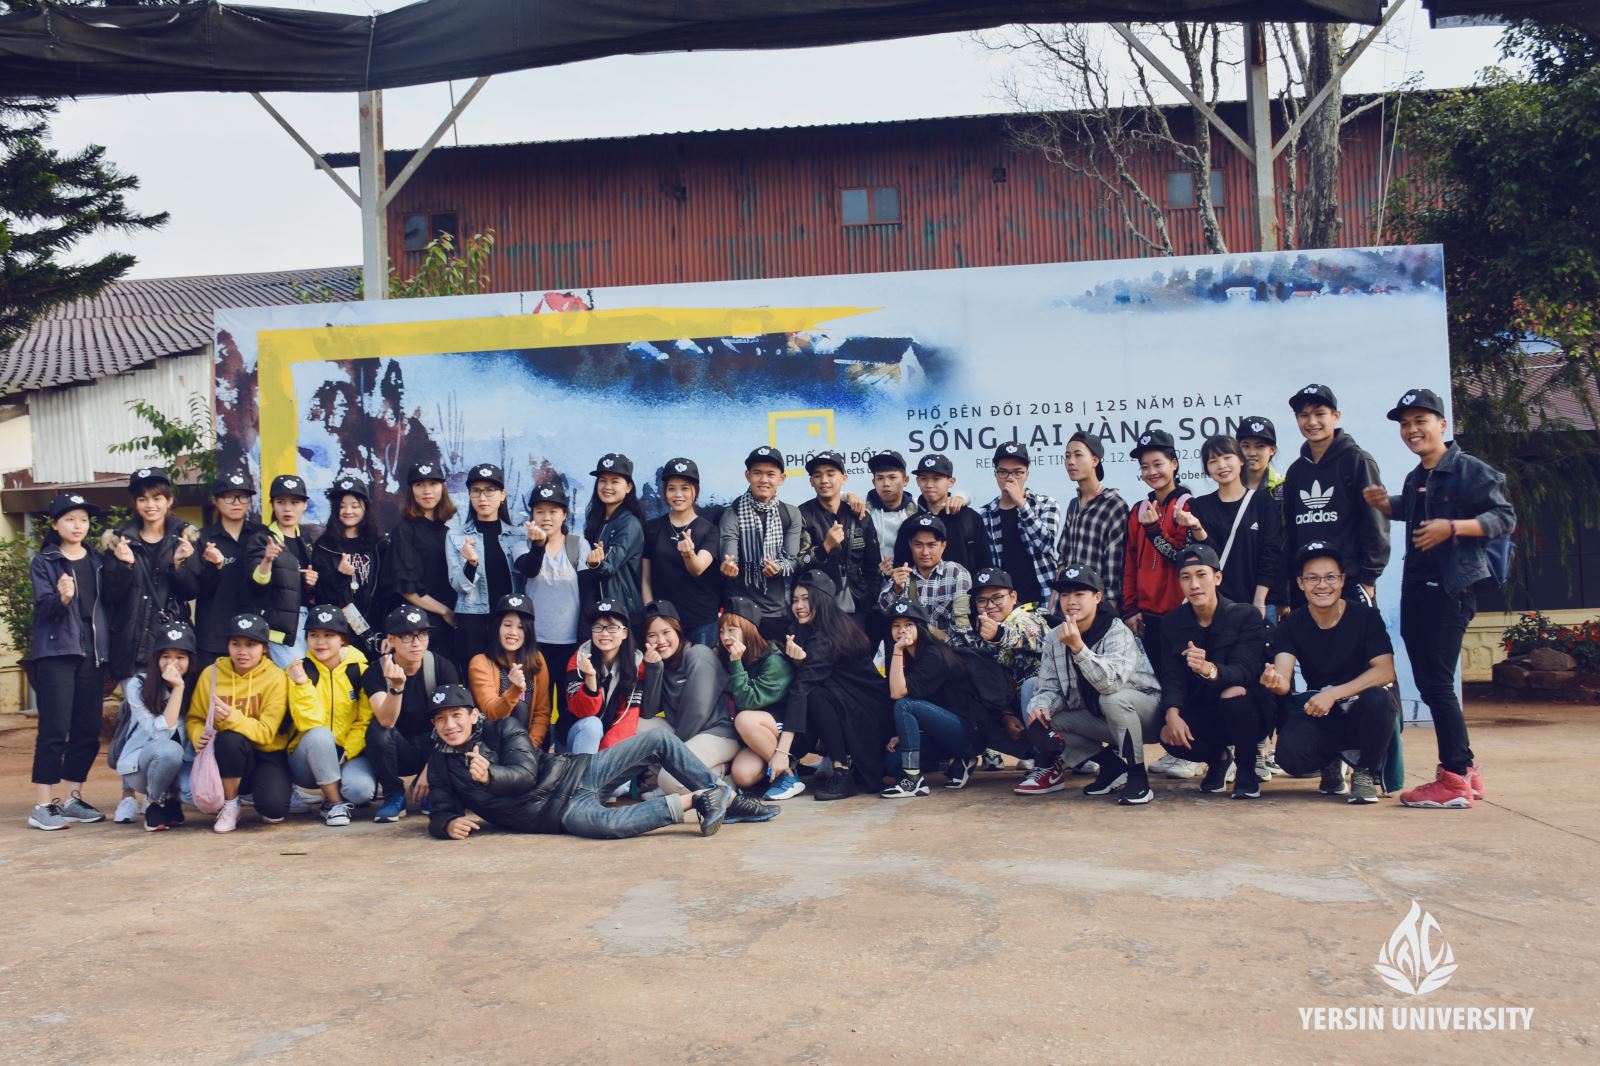 Khoa QTKD Du lịch – Trường Đại học Yersin Đà Lạt giành giải Nhất phần thi Nghệ thuật sắp đặt